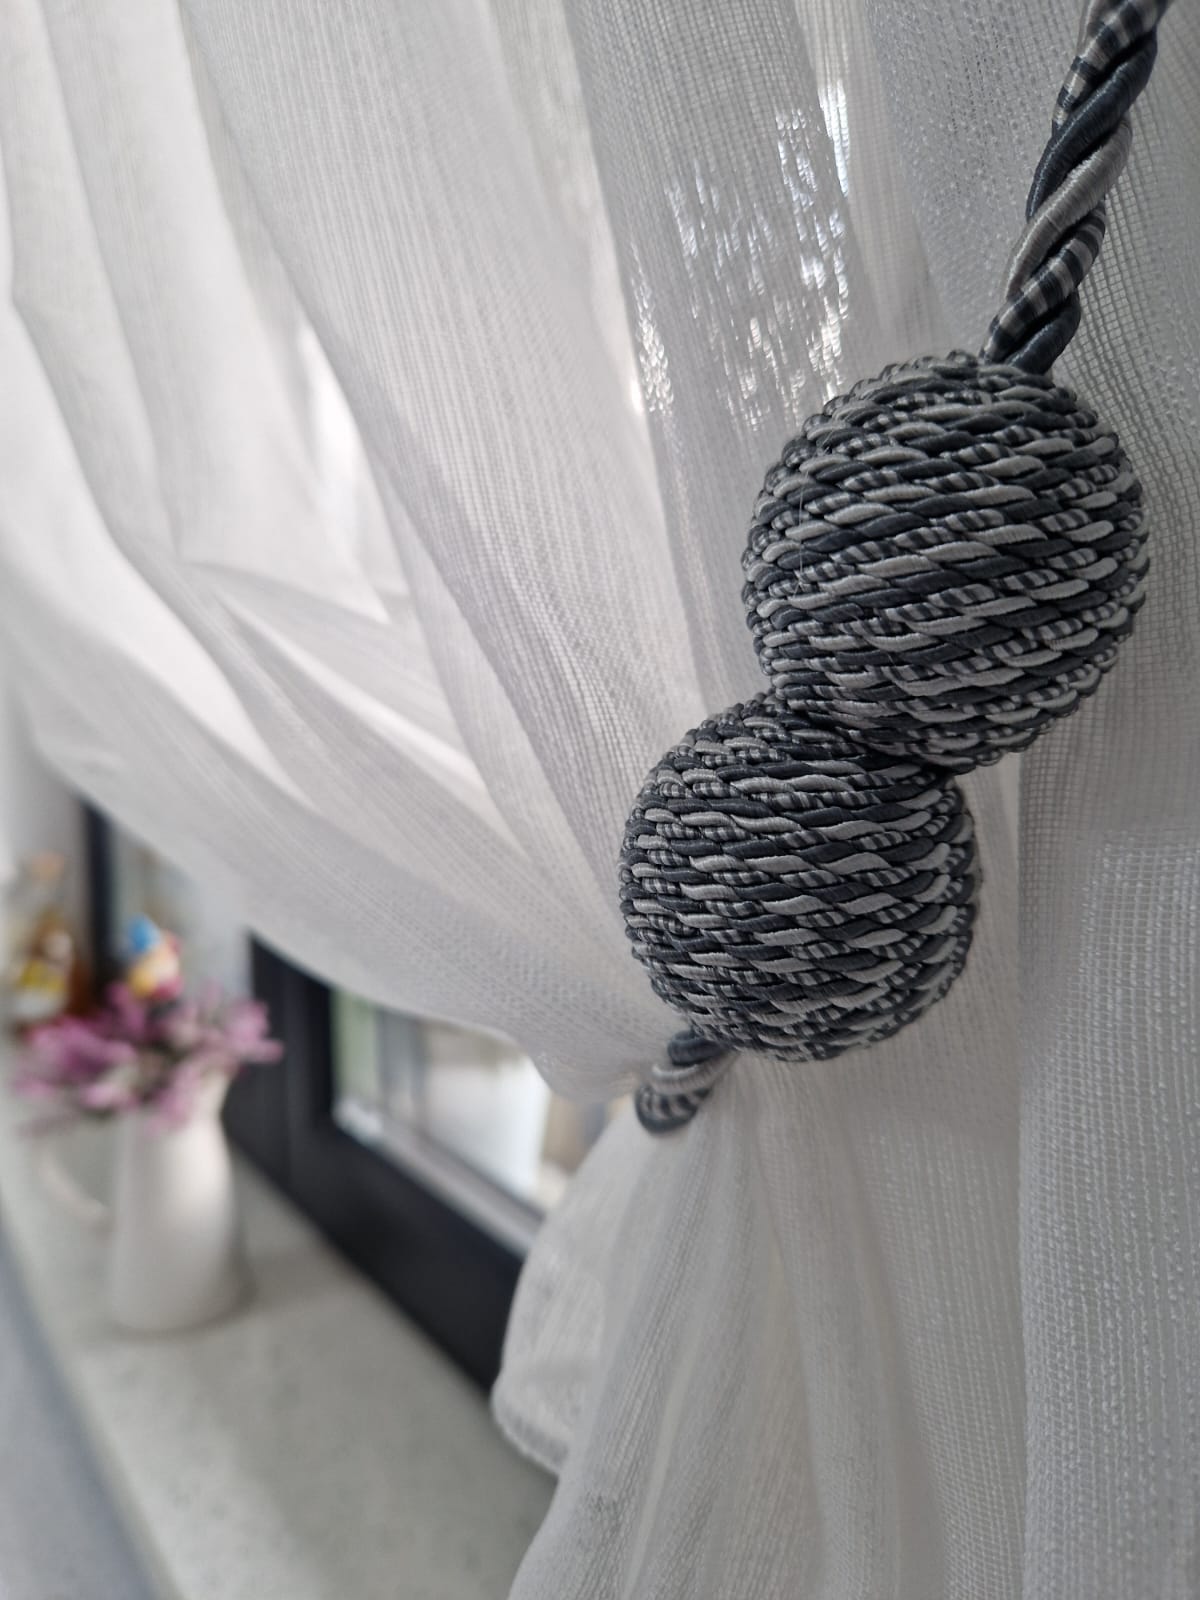 Magnet decorativ rotund pentru prinderea perdelelor și draperiilor, șnur textil 40 cm, gri perlat și antracit